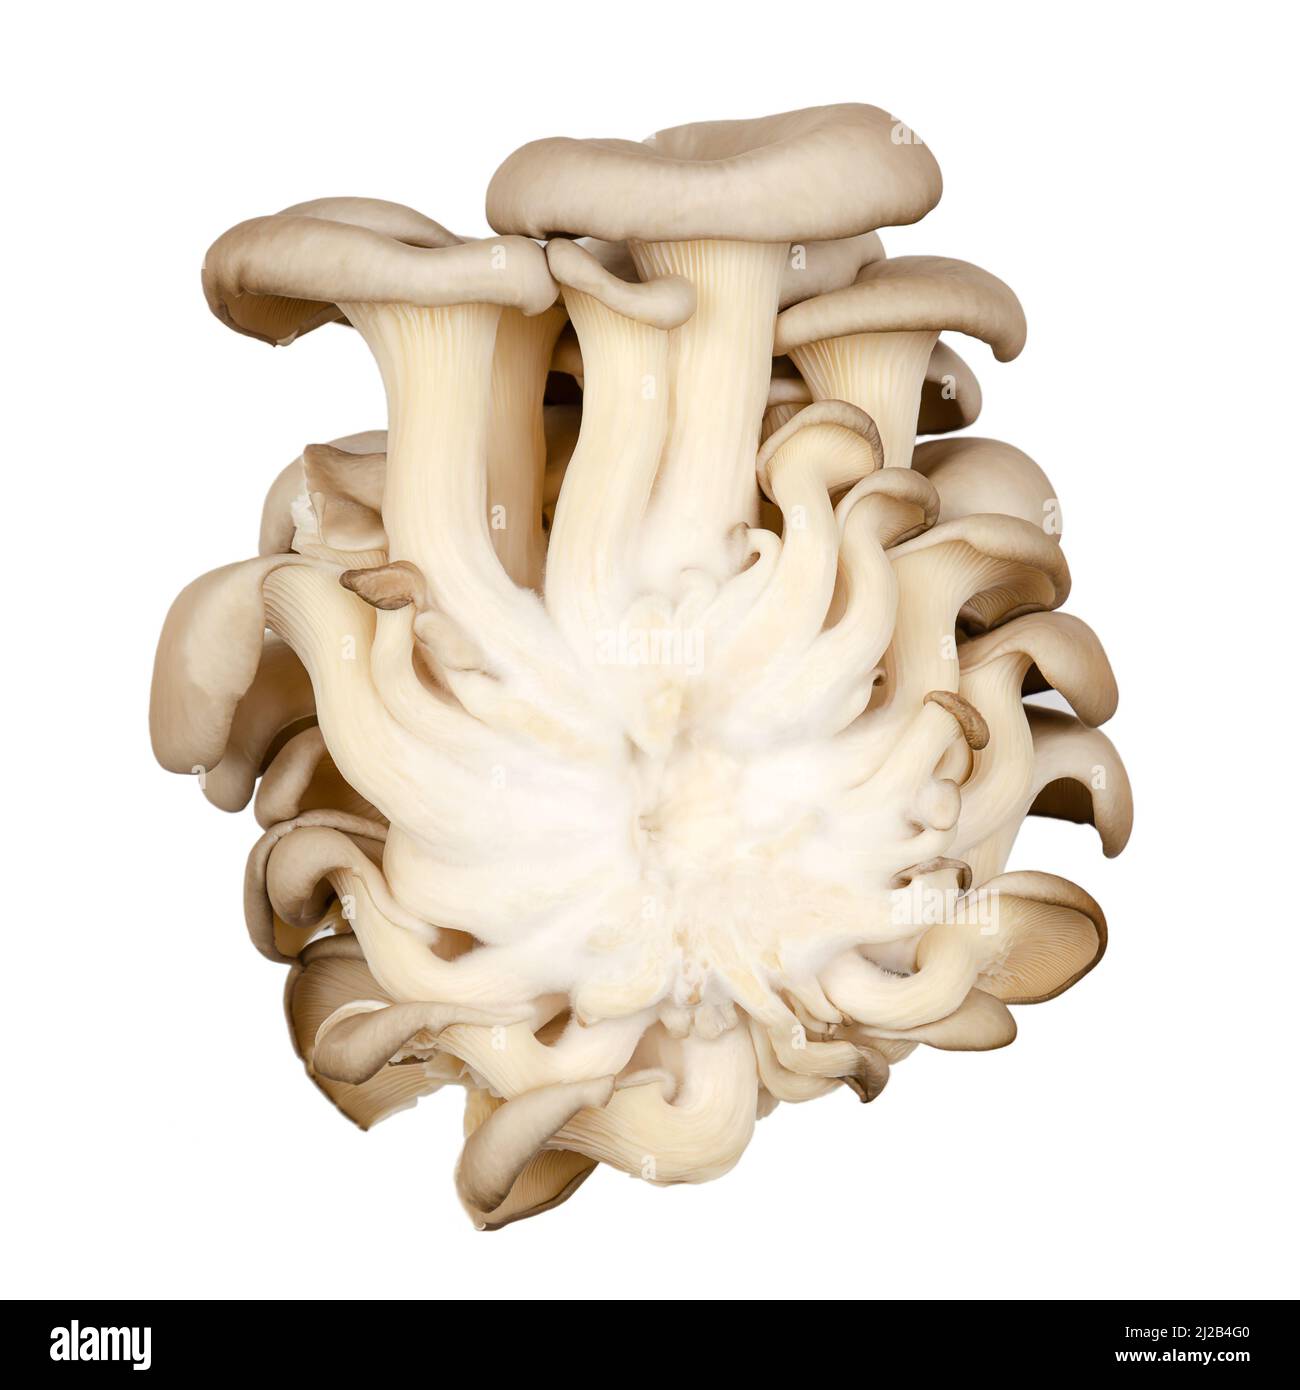 Abalone mushroom